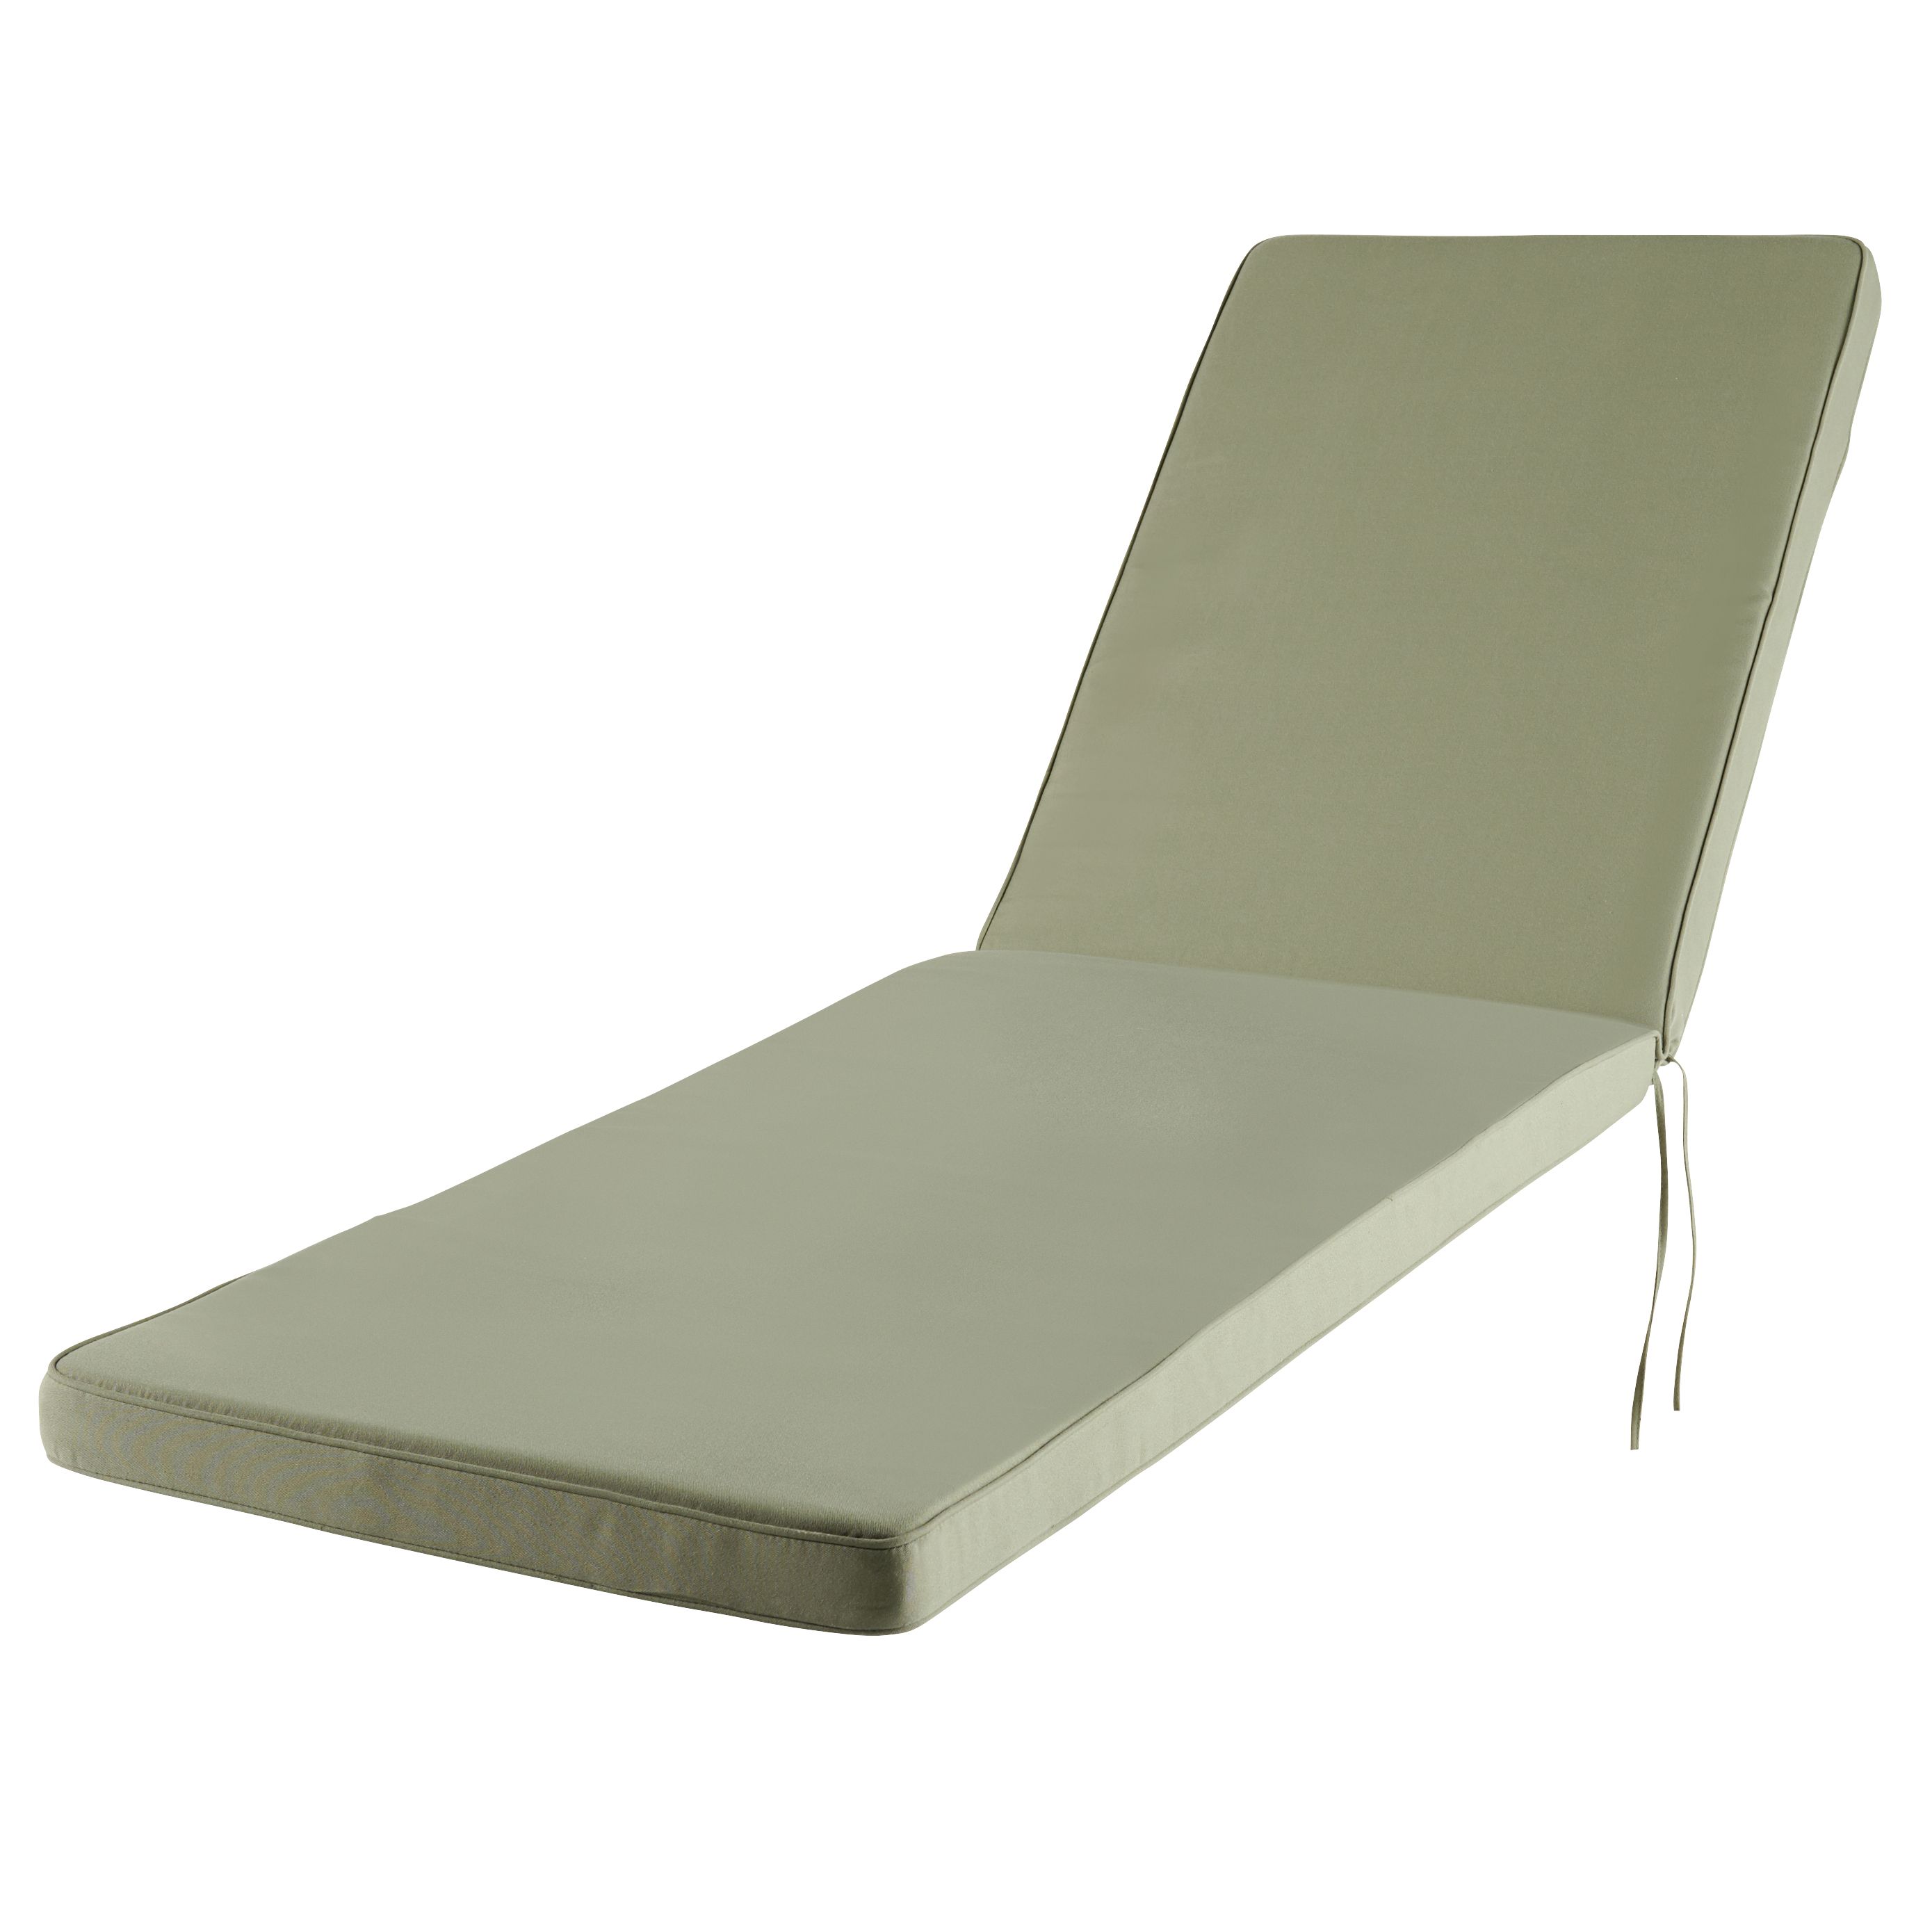 GoodHome Tiga Deep lichen green Plain Sunlounger cushion (L)190cm